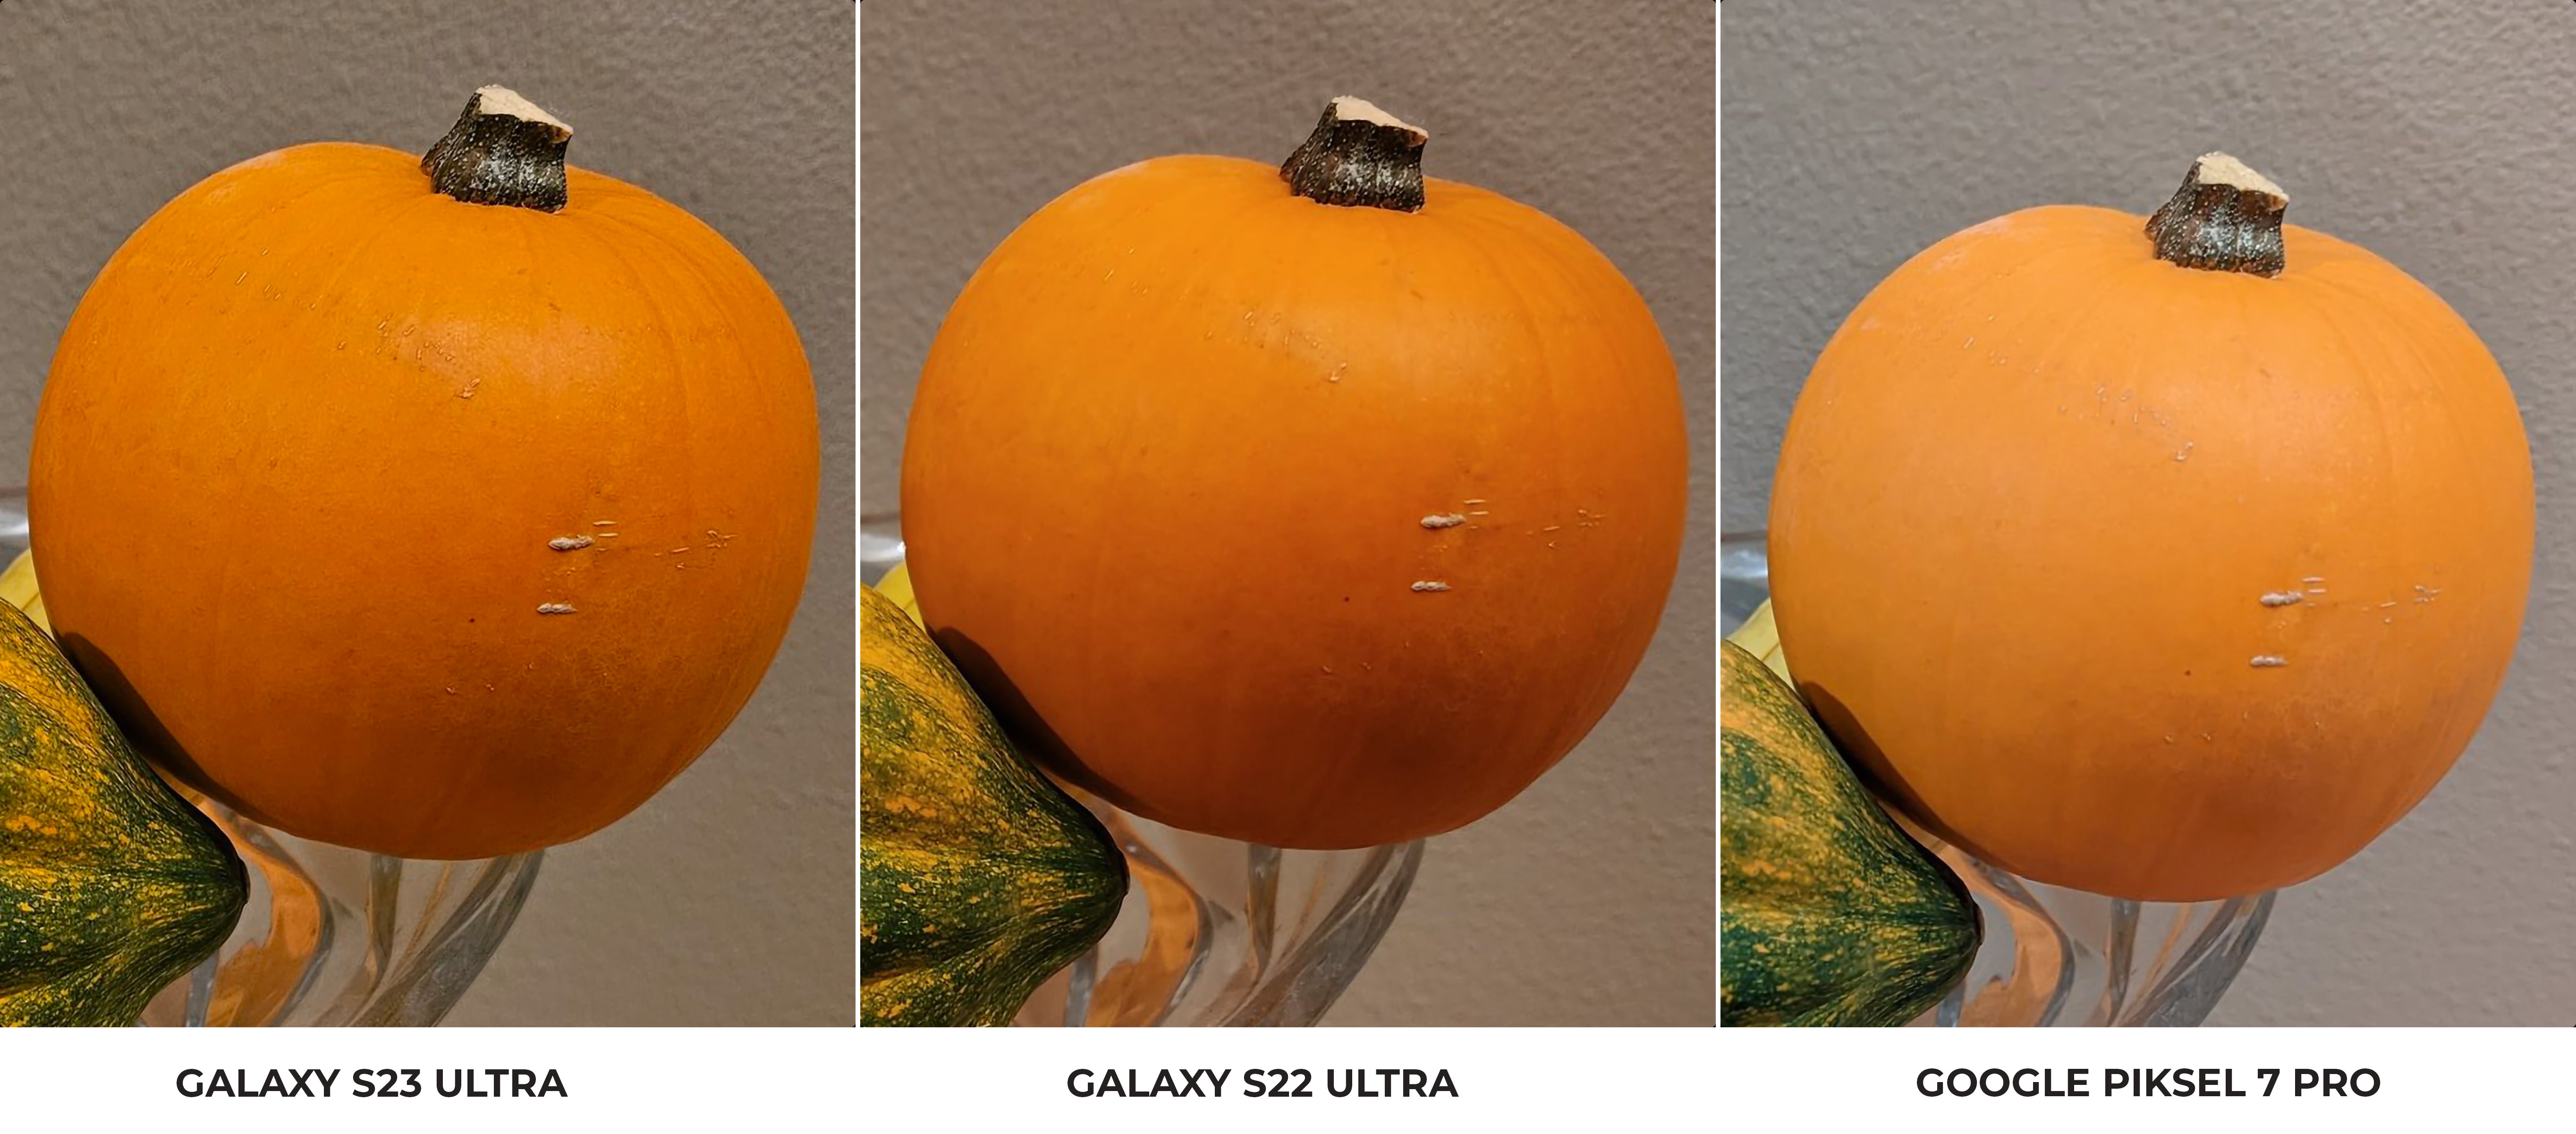 Galaxy S23 Ultra'nın 200 MP kamerasından örnek fotoğraf geldi